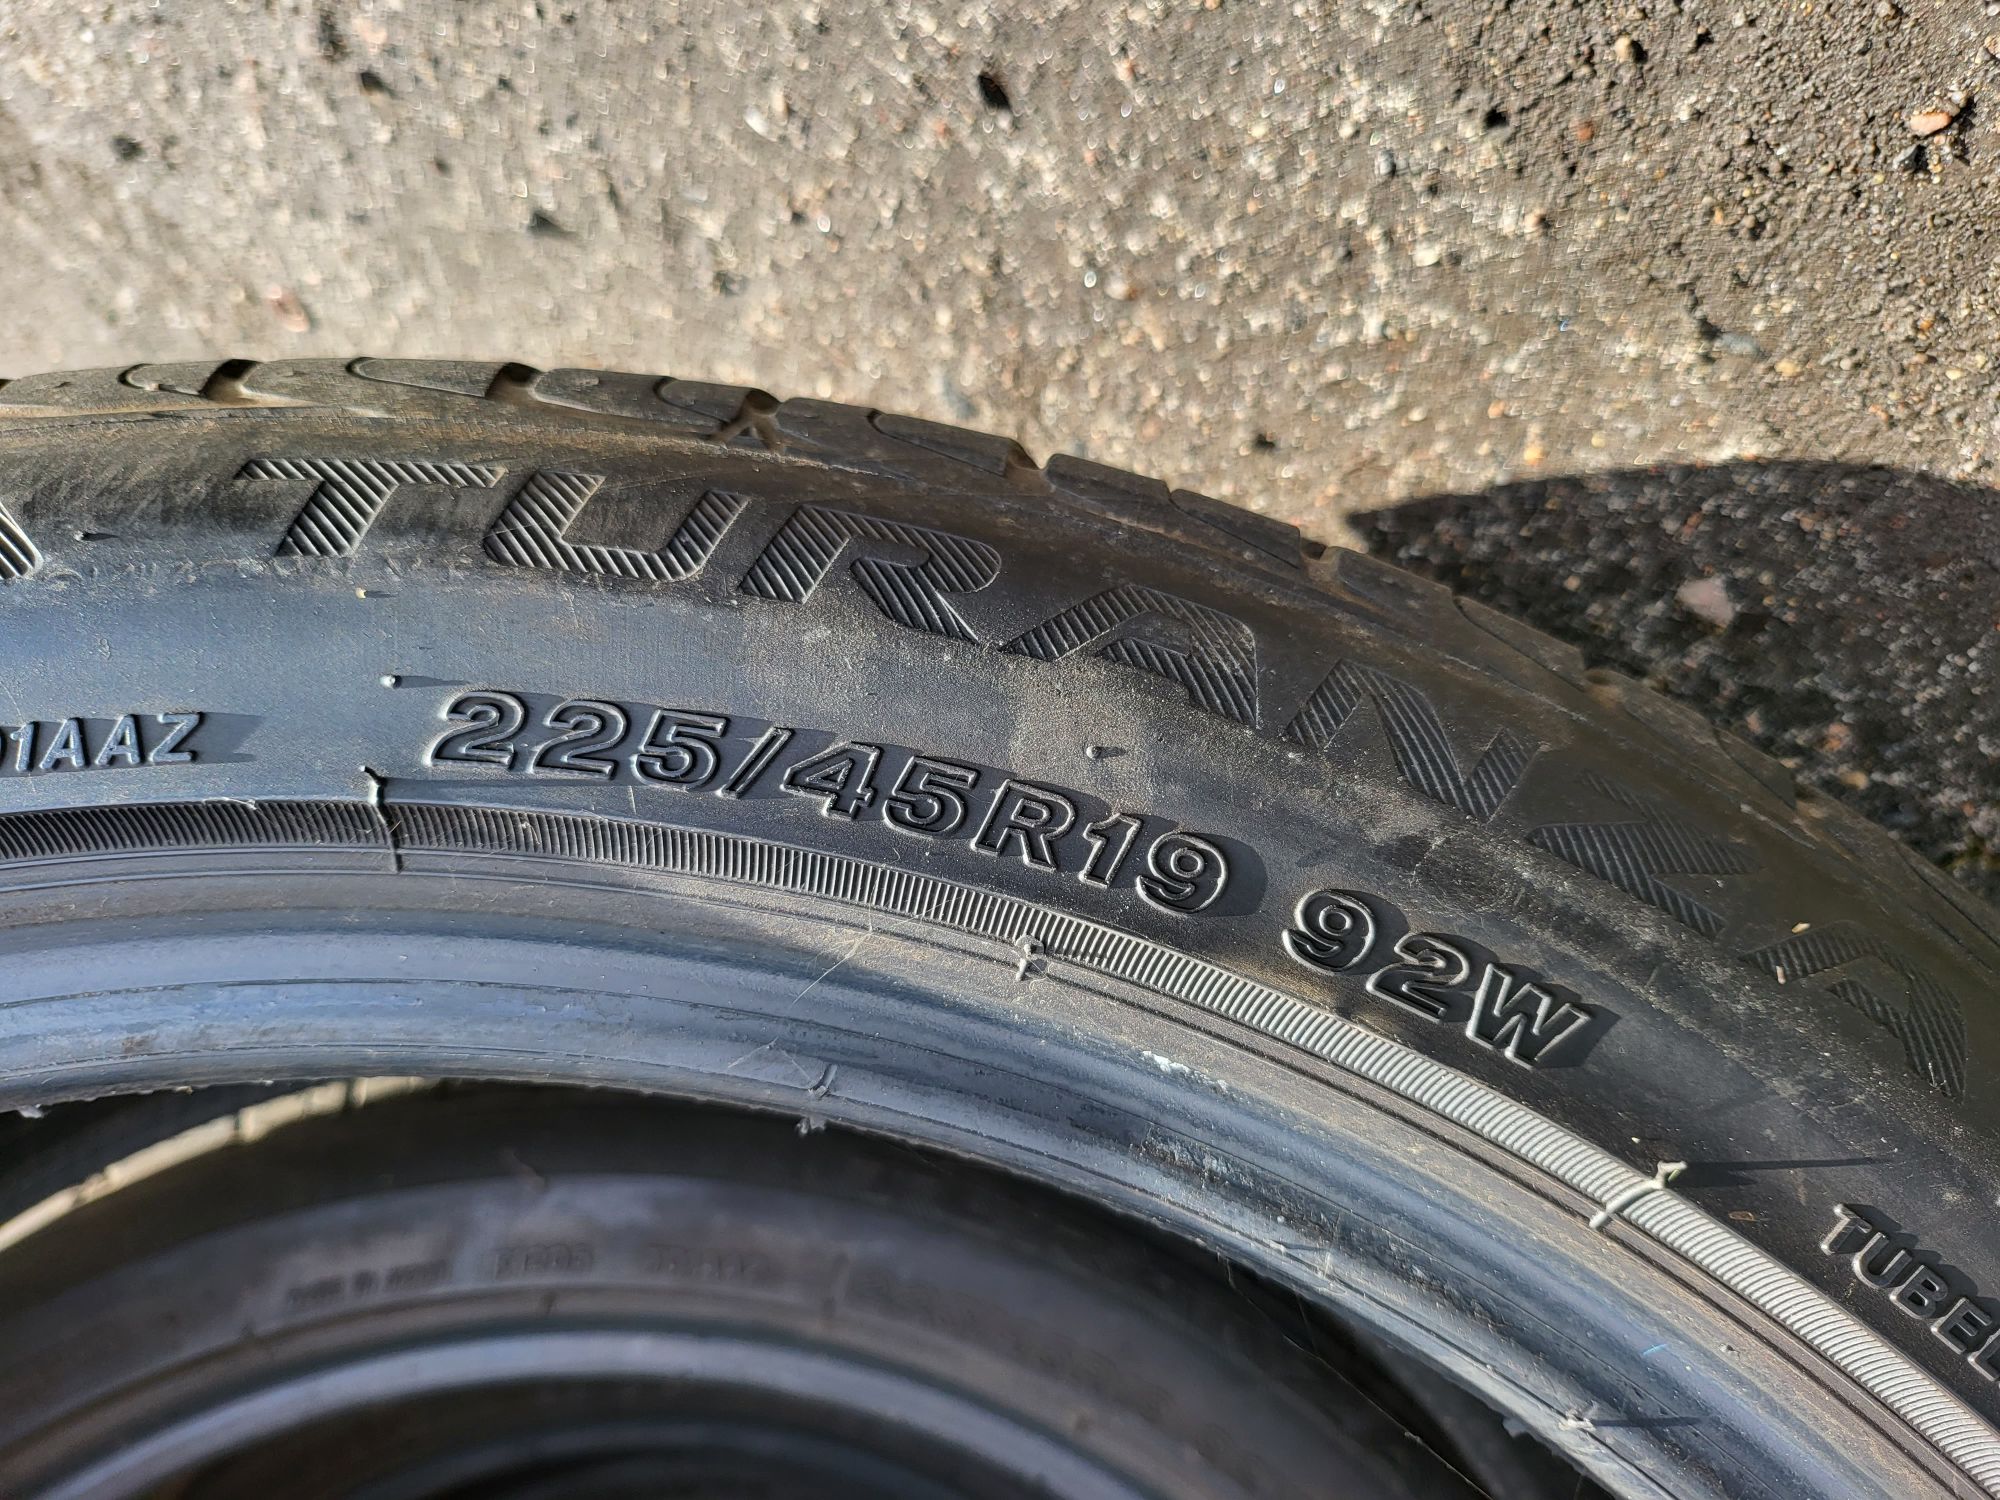 2x Opony letnie 225/45/19 92W Bridgestone bieżnik 7mm, 2015 rok